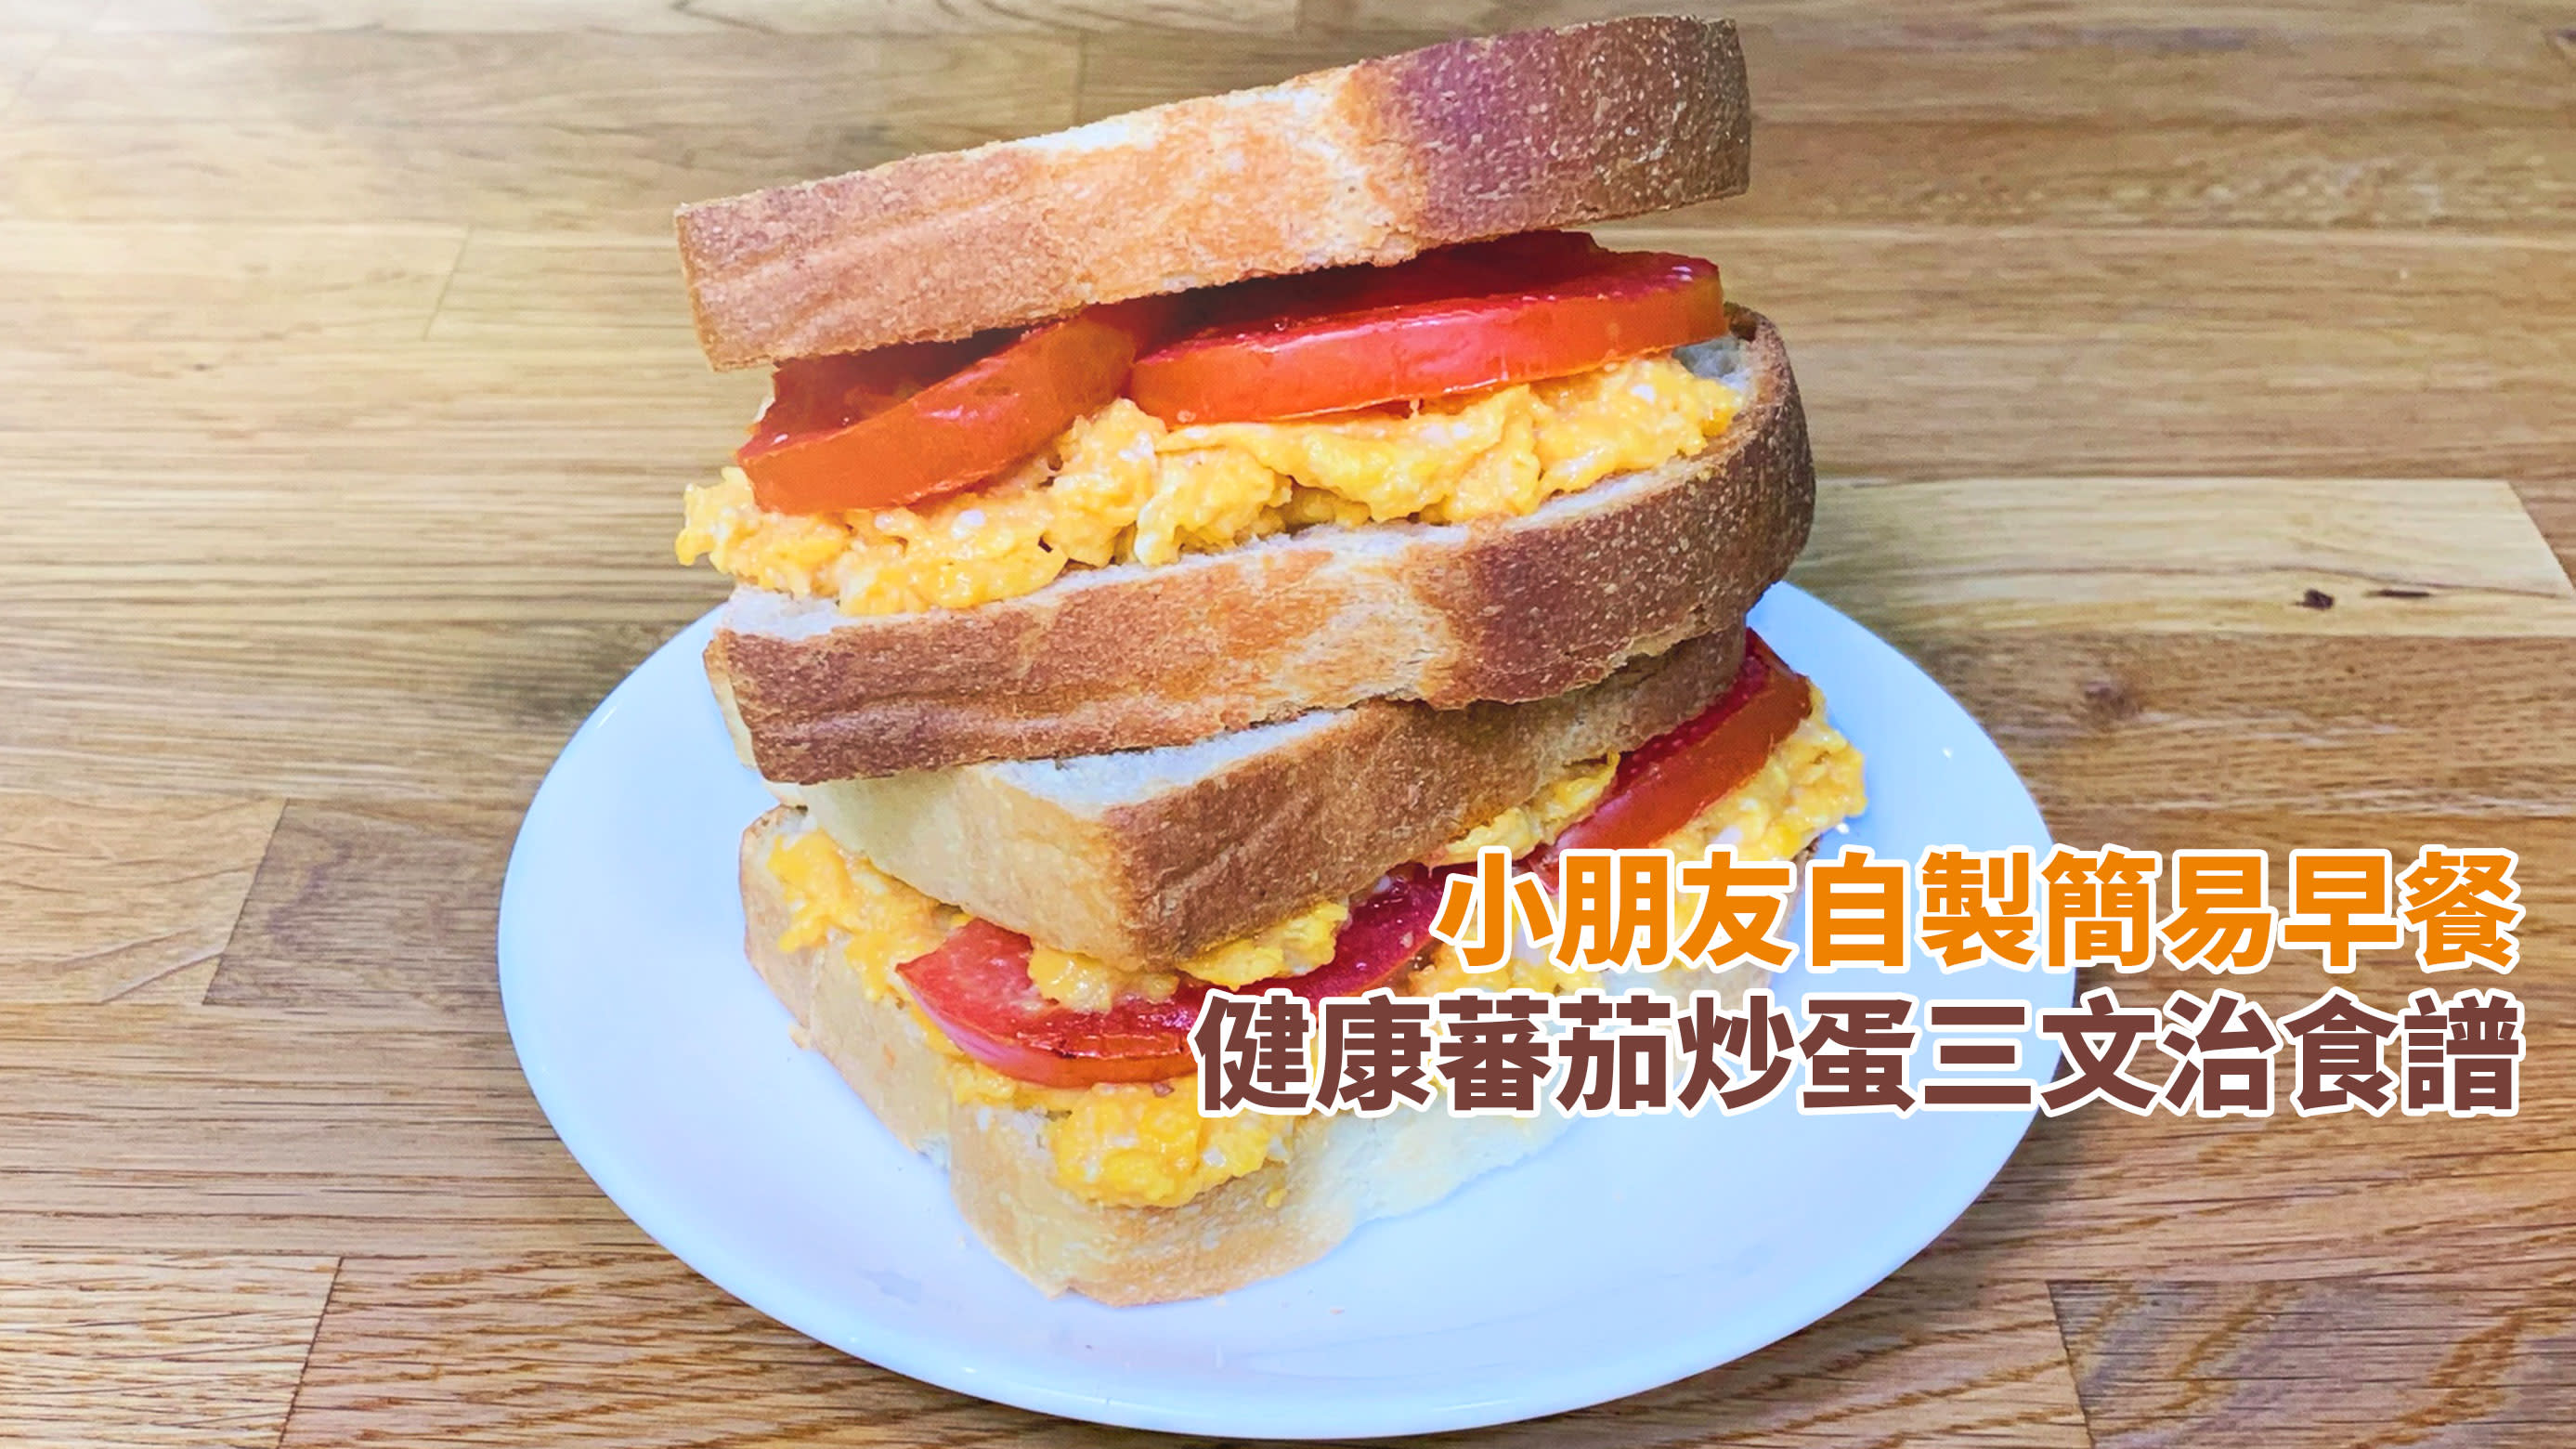 早餐食譜 雞蛋蕃茄三文治 簡單高蛋白健康食譜 Yahoo 新聞